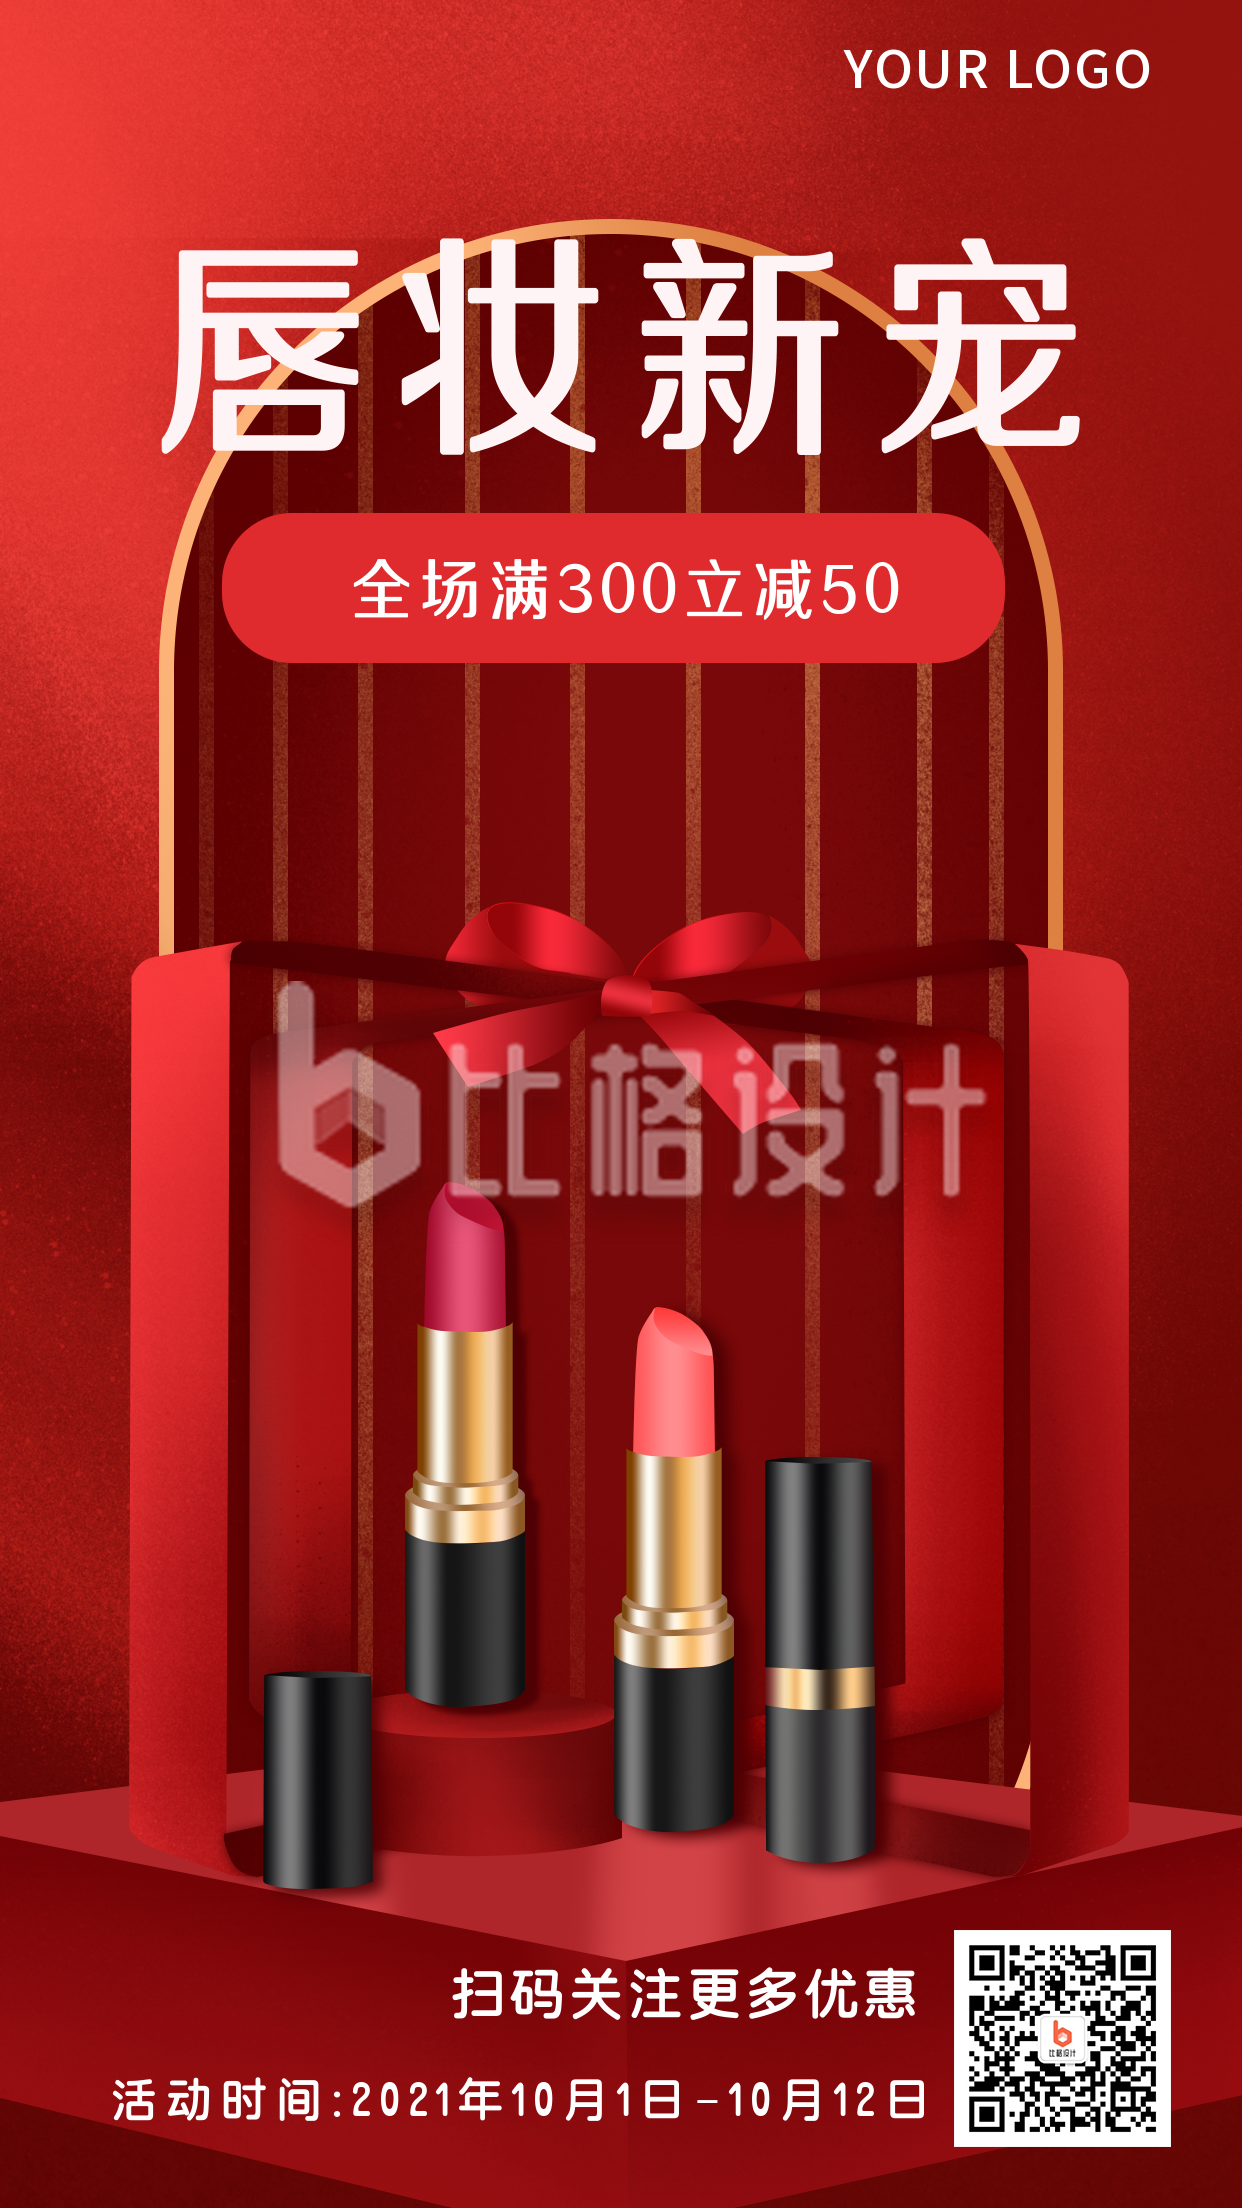 美妆化妆品商品福利促销活动购物手机海报